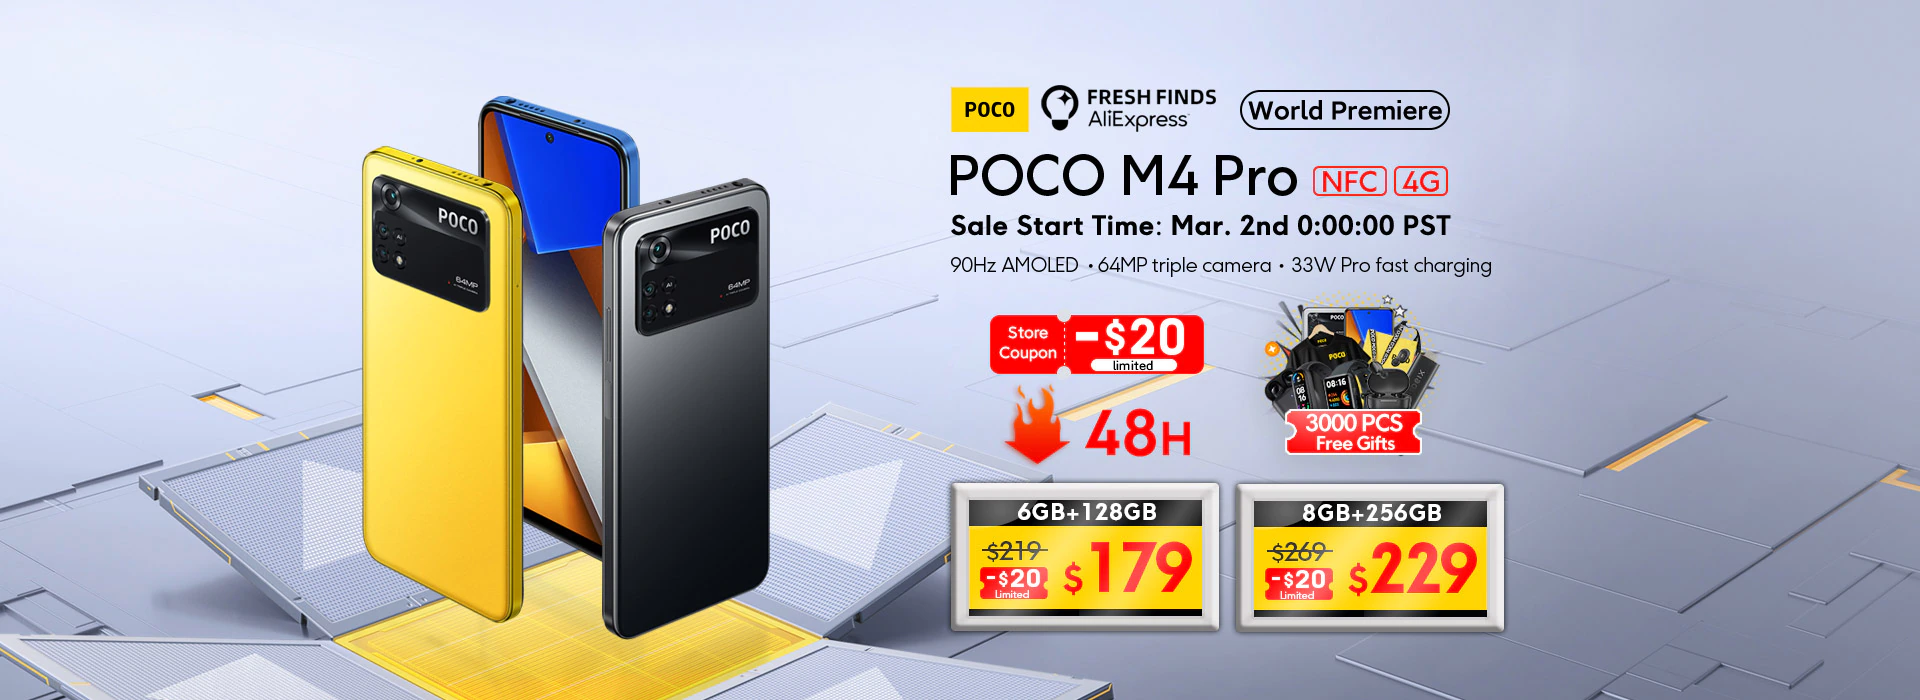 Распродажа смартфонов POCO M4 Pro 4G со скидкой